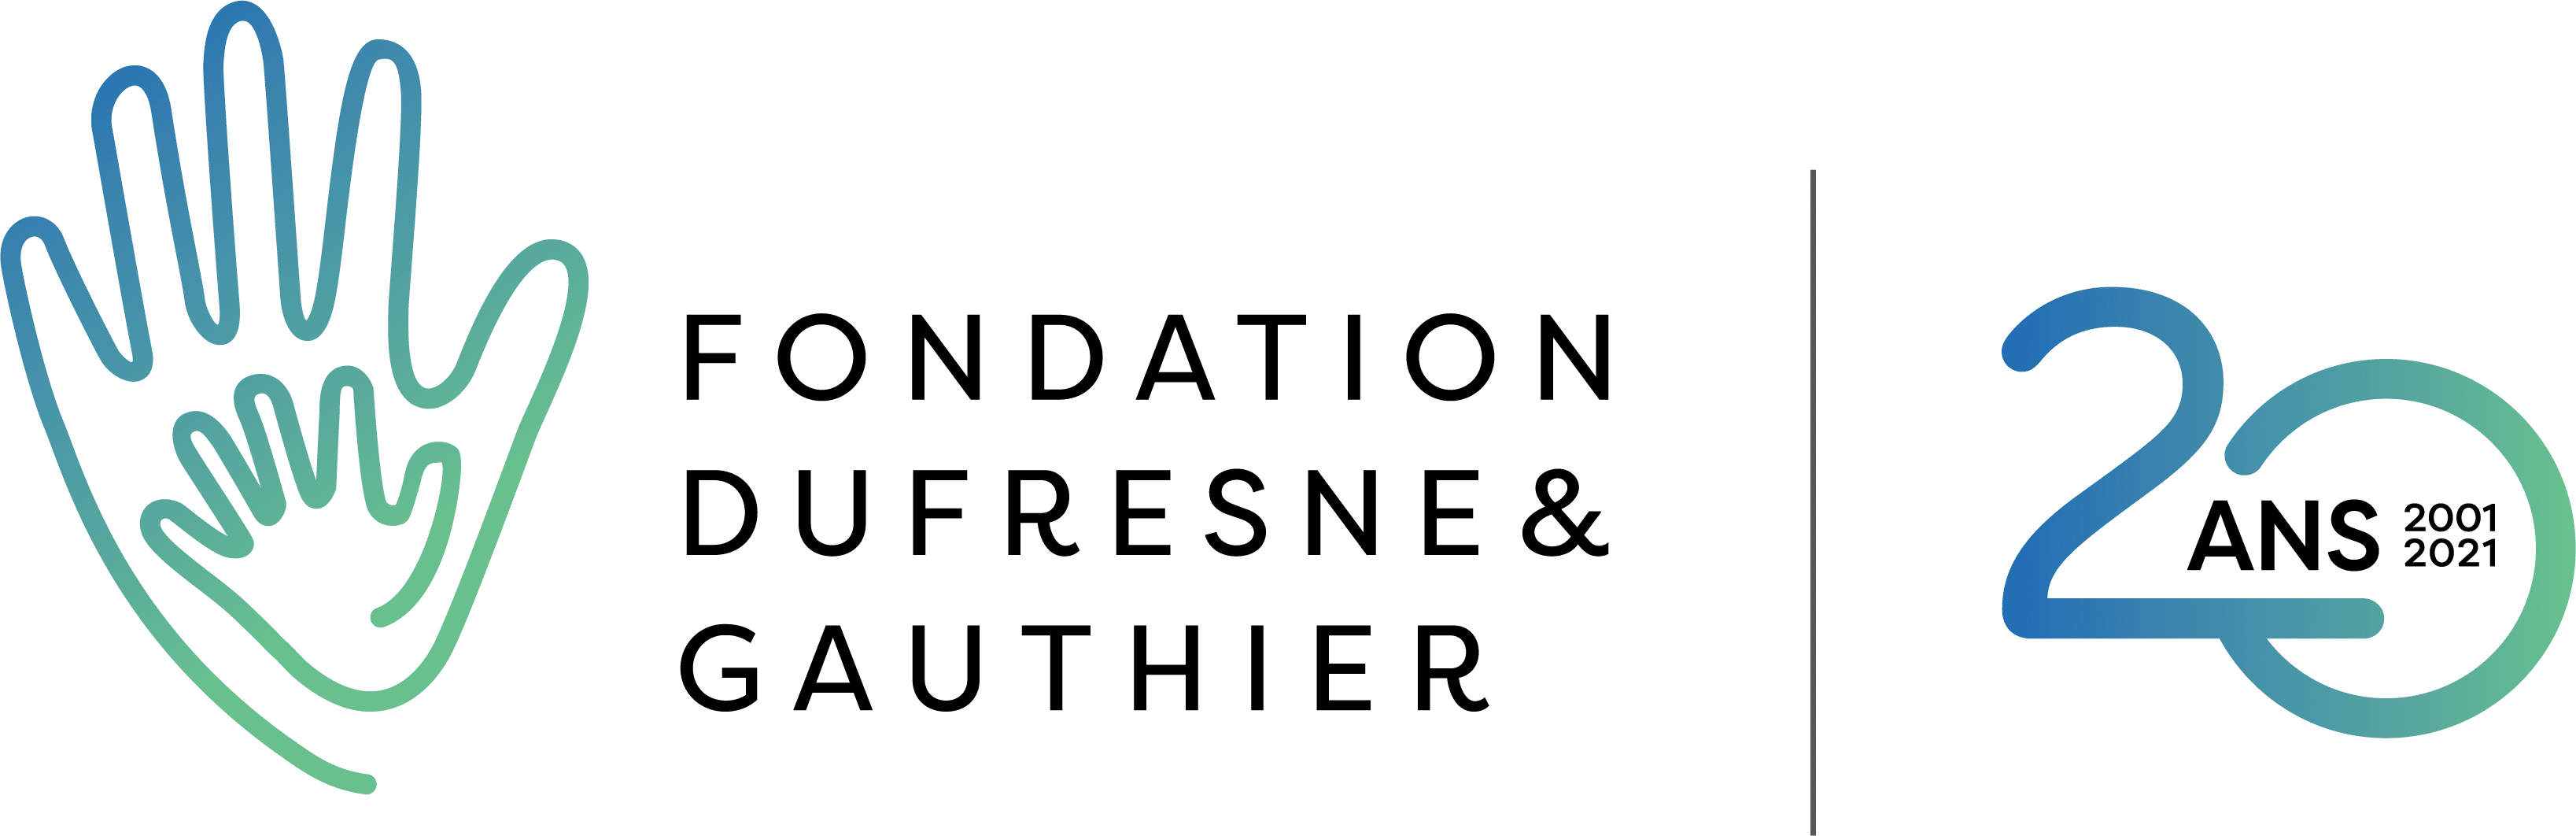 Fondation Dufresne et Gauthier